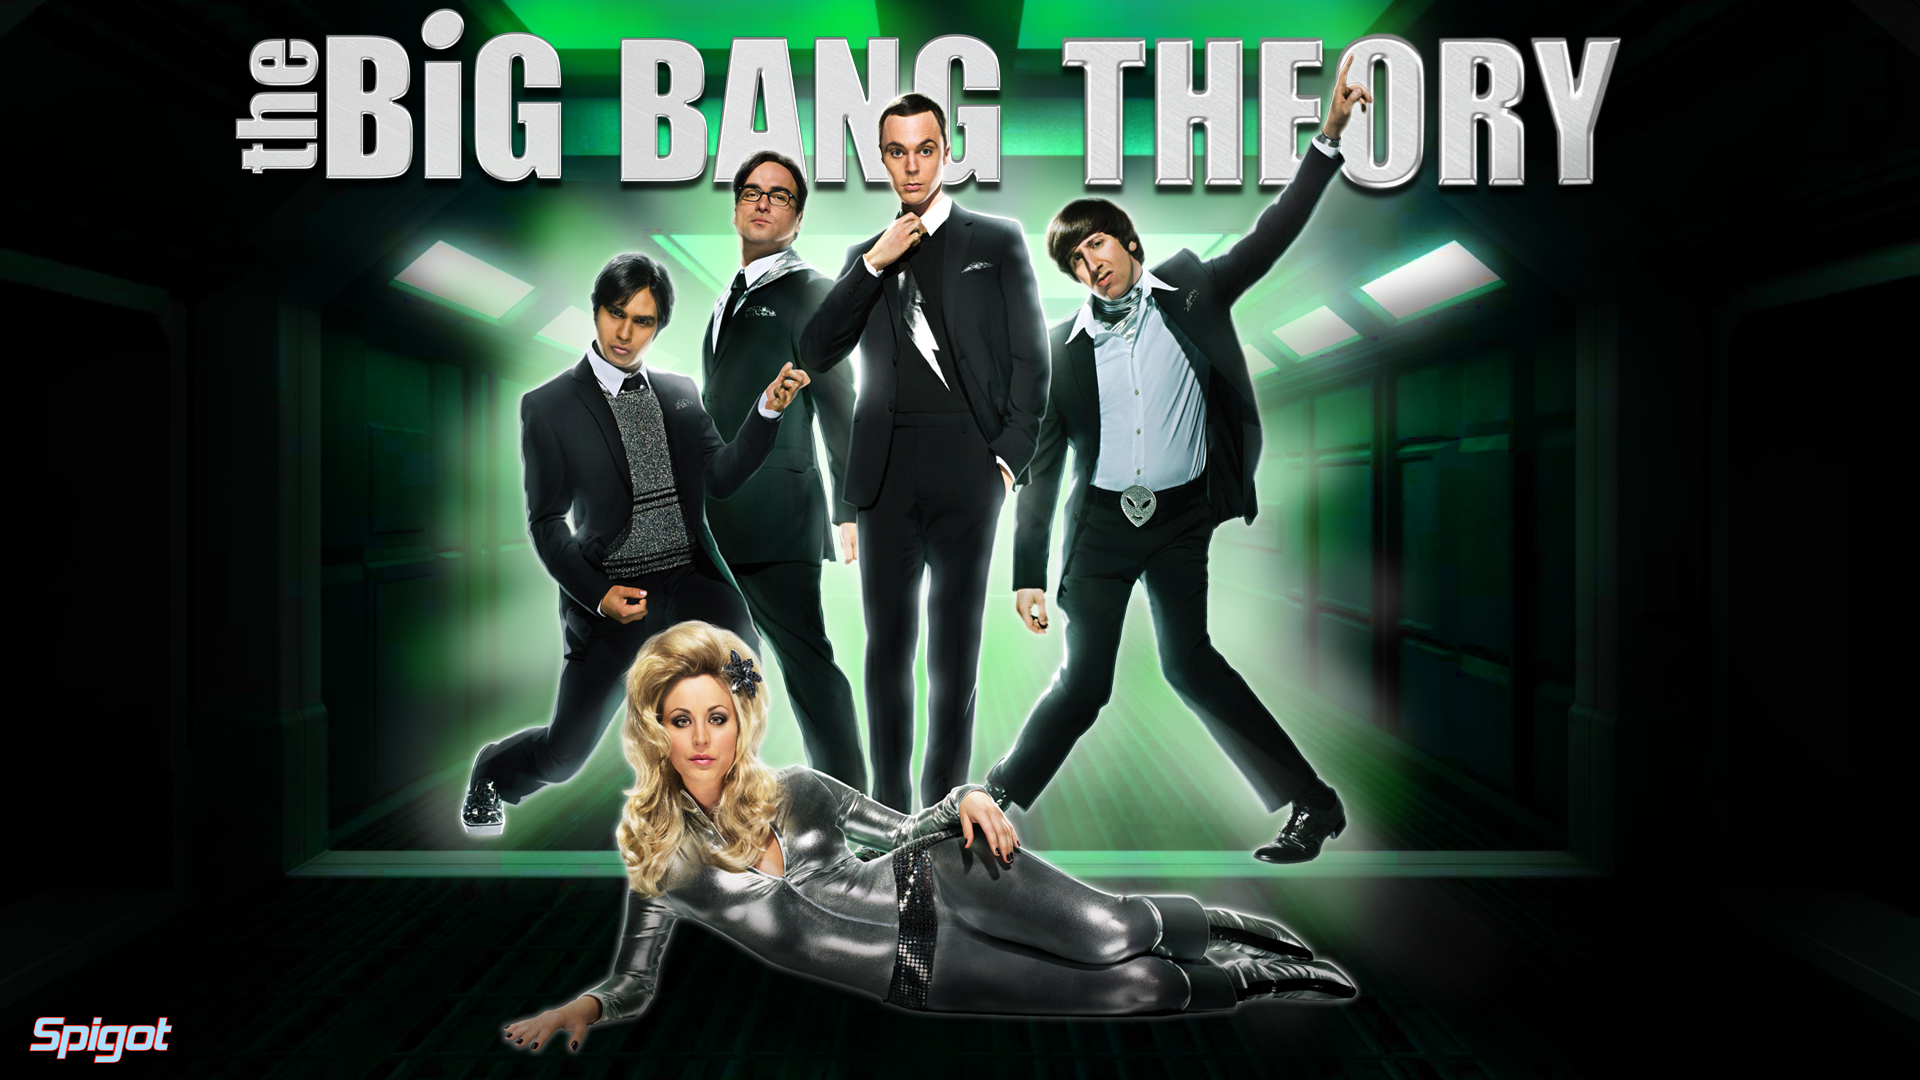 Big Bang Theory Wallpaper Penny